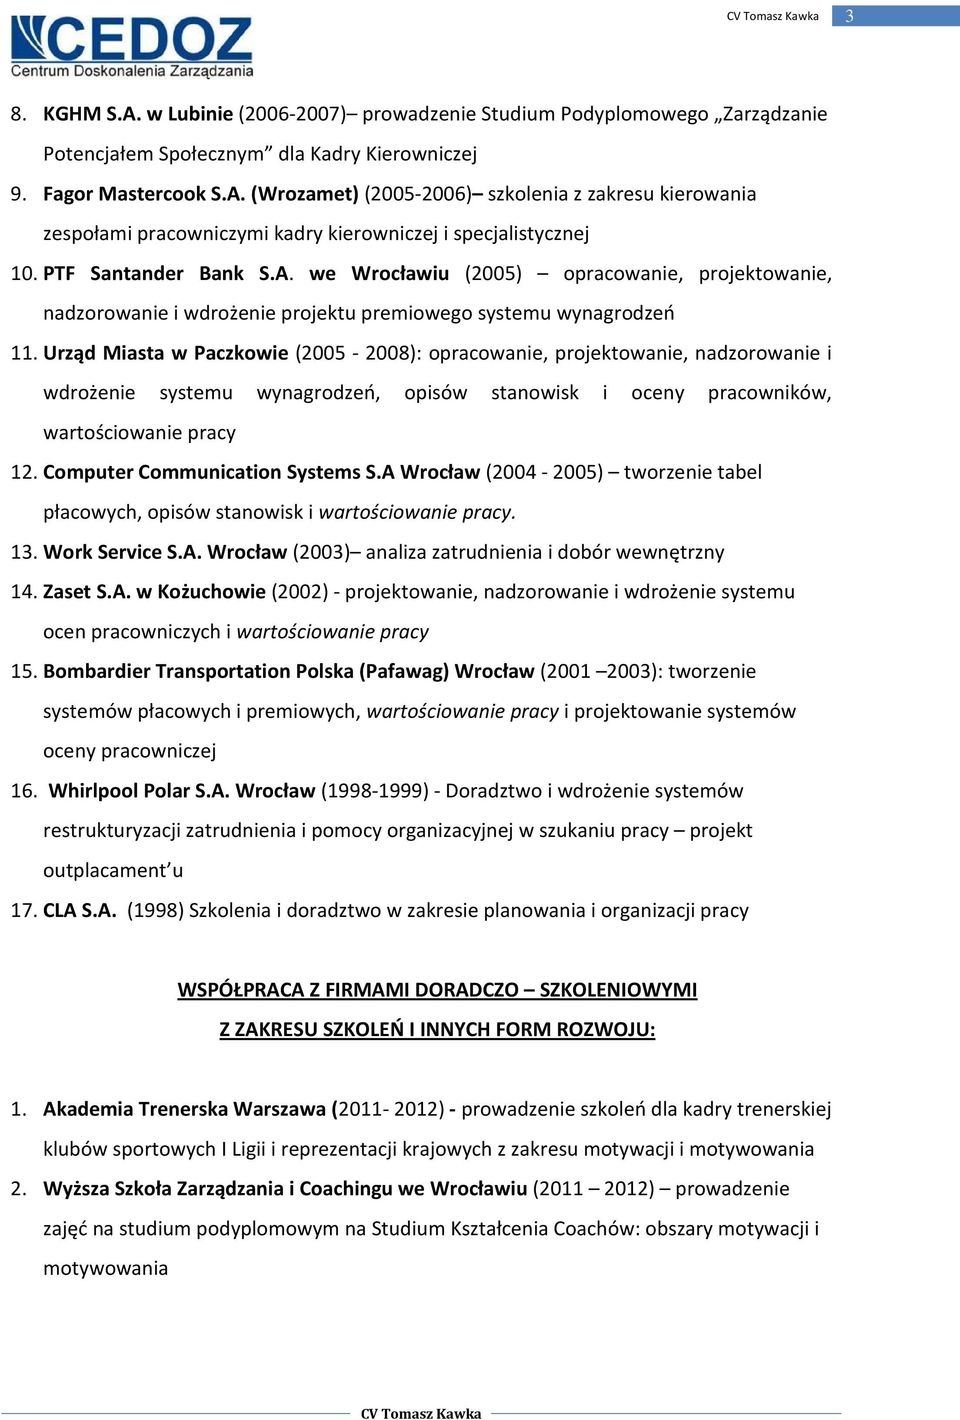 Urząd Miasta w Paczkowie (2005-2008): opracowanie, projektowanie, nadzorowanie i wdrożenie systemu, opisów stanowisk i oceny pracowników, wartościowanie pracy 12. Computer Communication Systems S.